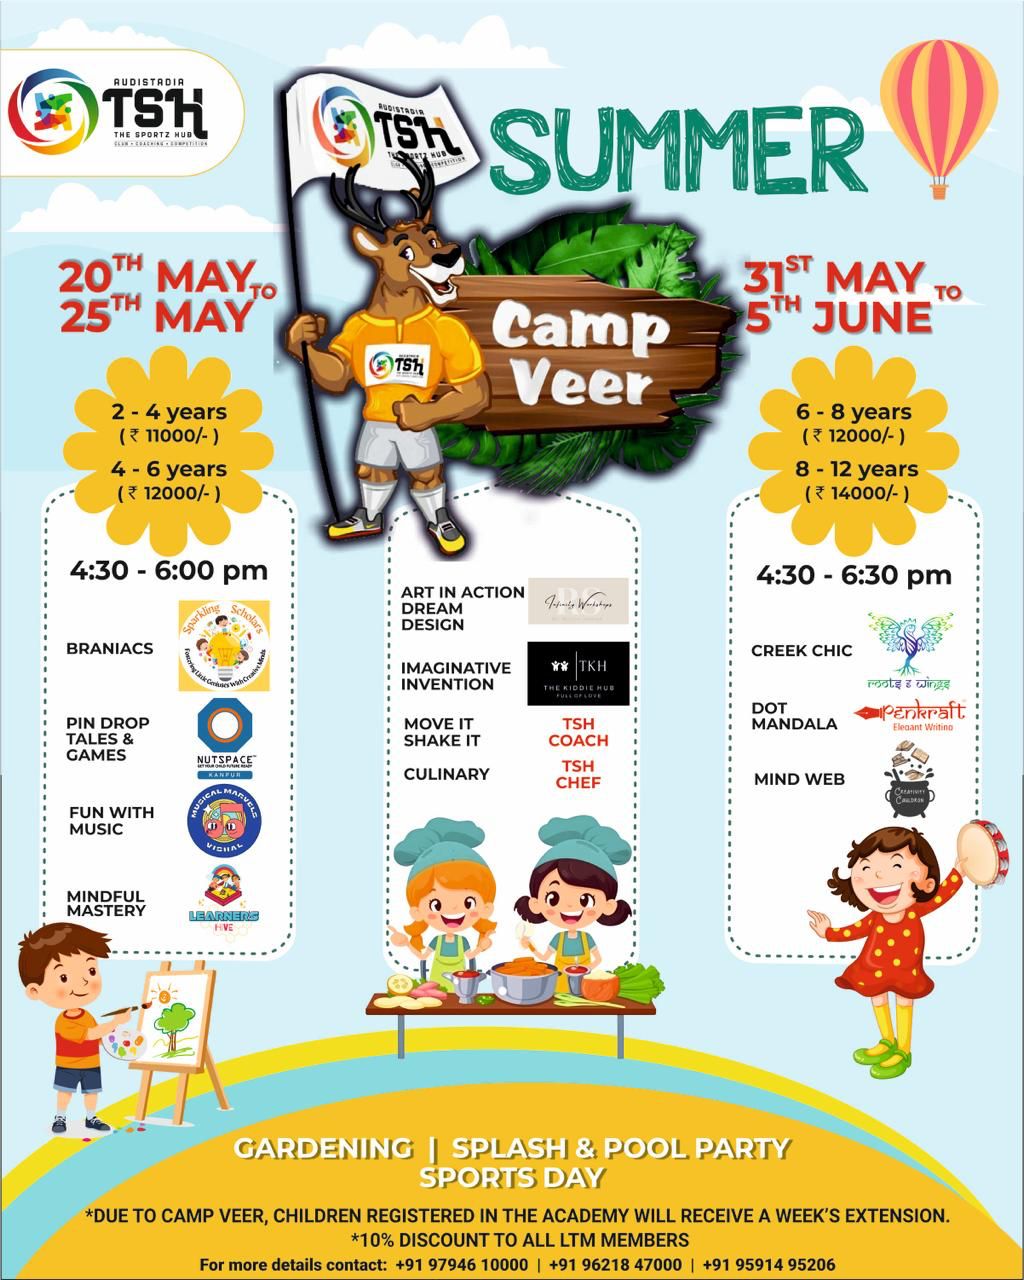 Camp Veer Summer Camp